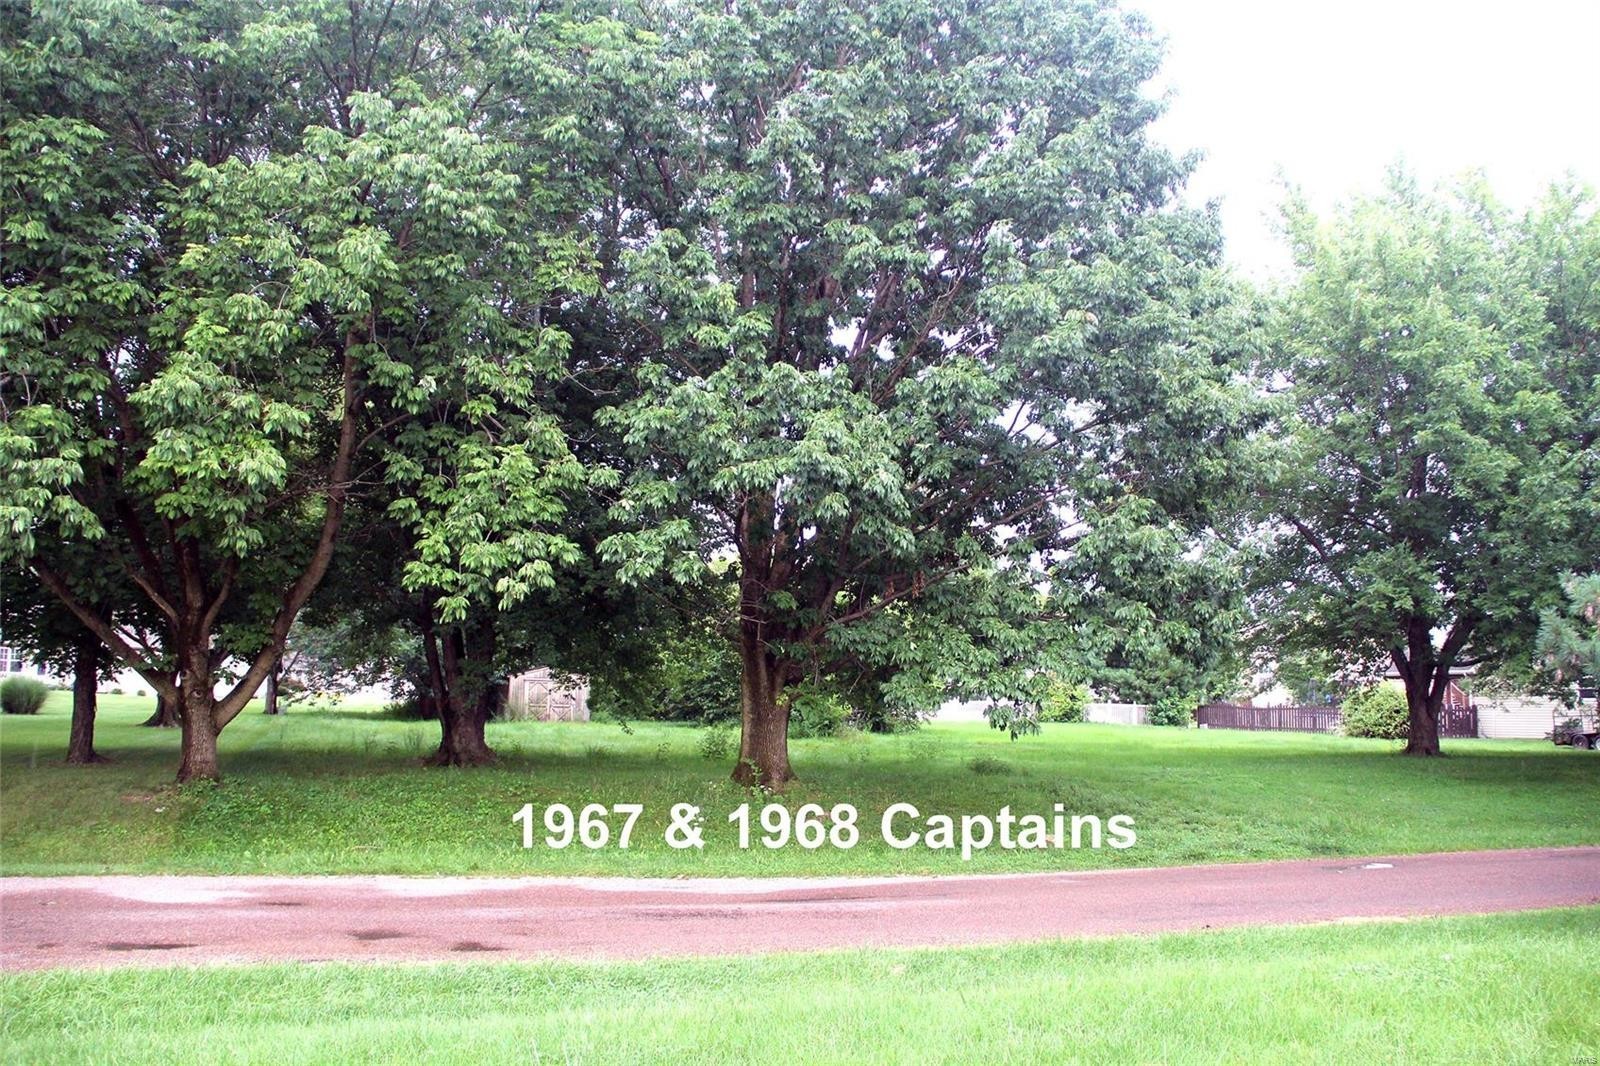 1. 1967 Captains / 1968 Captains Drive